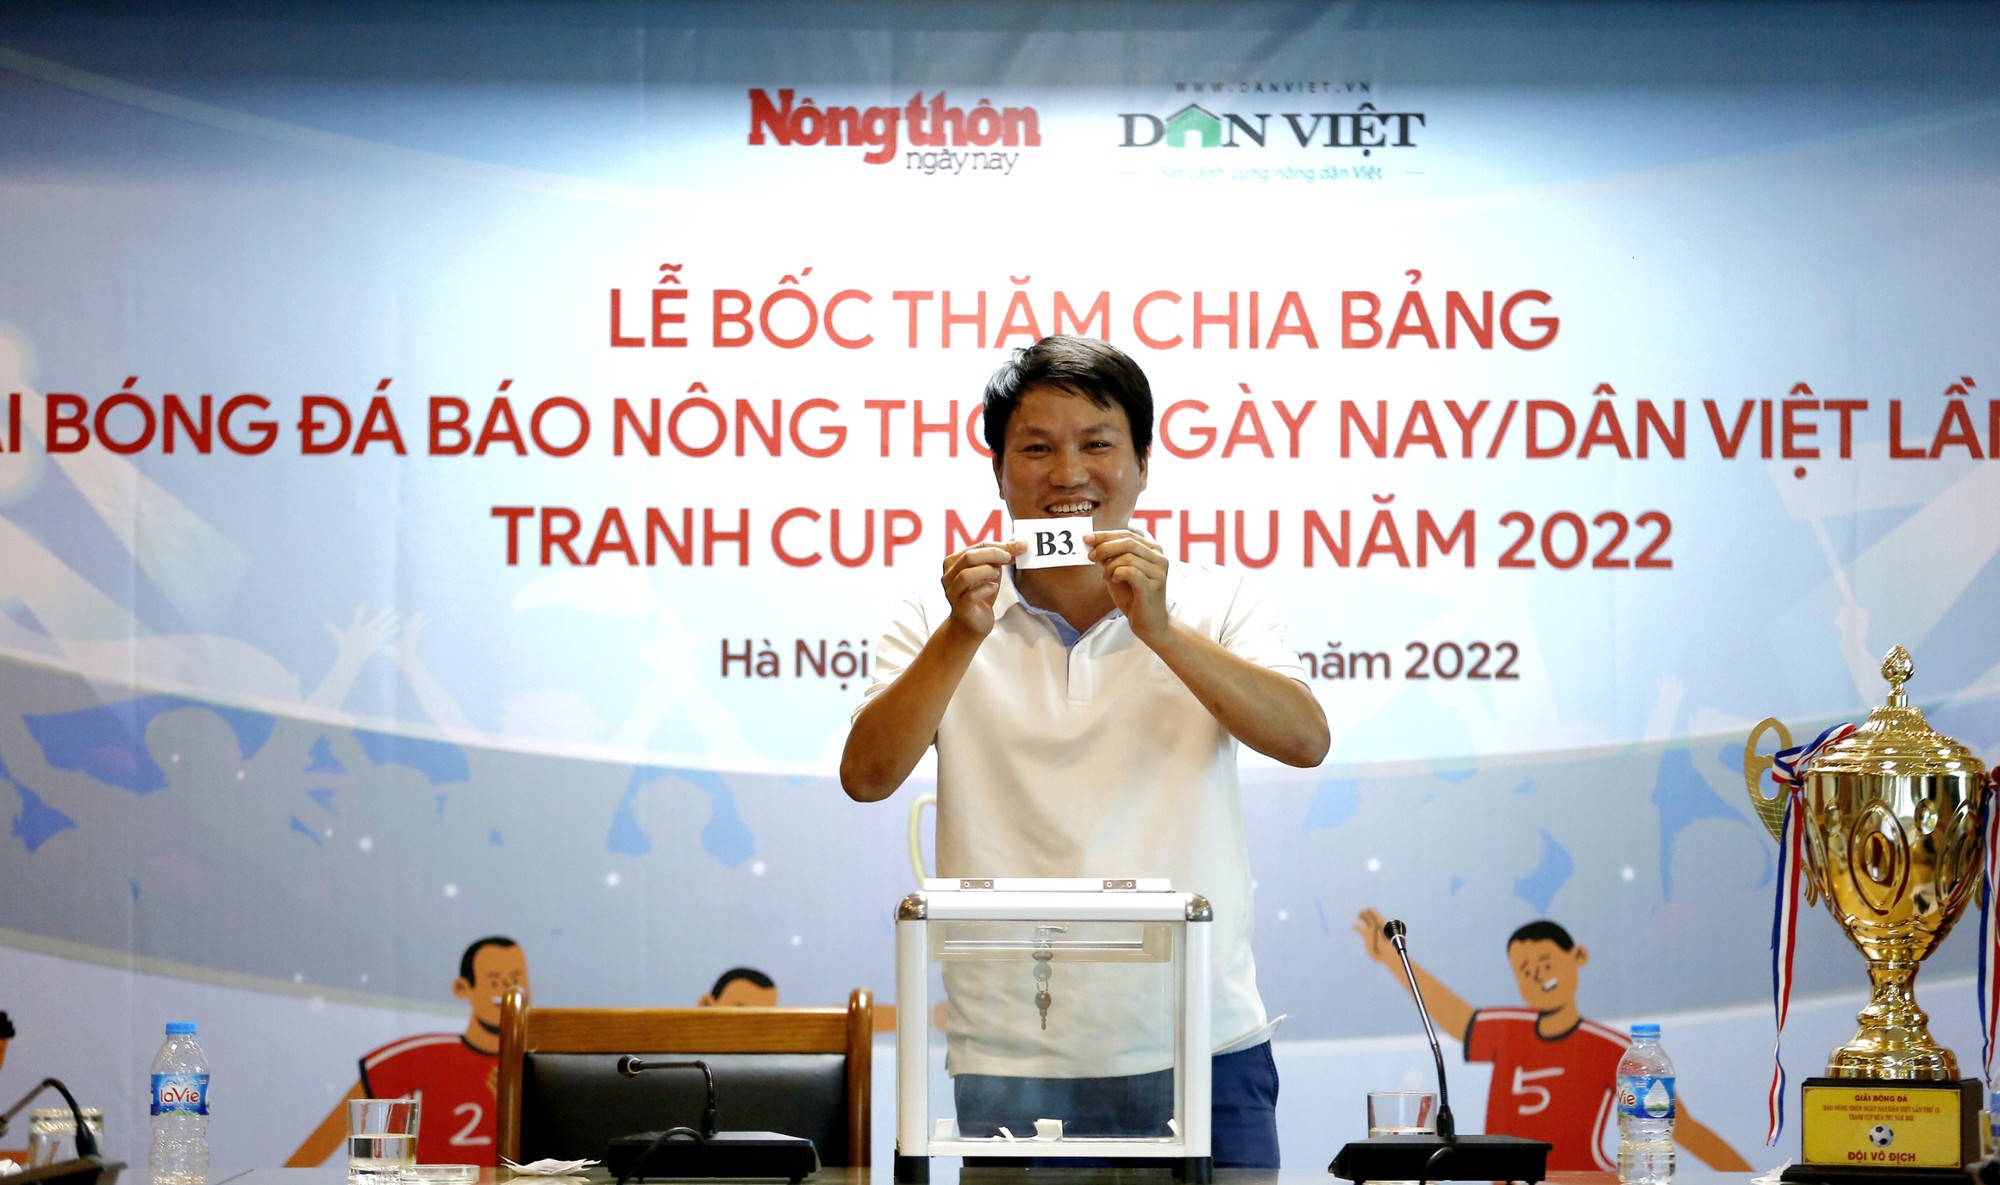 Chia bảng Giải bóng đá báo Báo NTNN/Dân Việt lần thứ 13 – tranh Cúp Mùa Thu 2022: Chủ nhà cùng bảng Vnexpress, Lao Động - Ảnh 6.